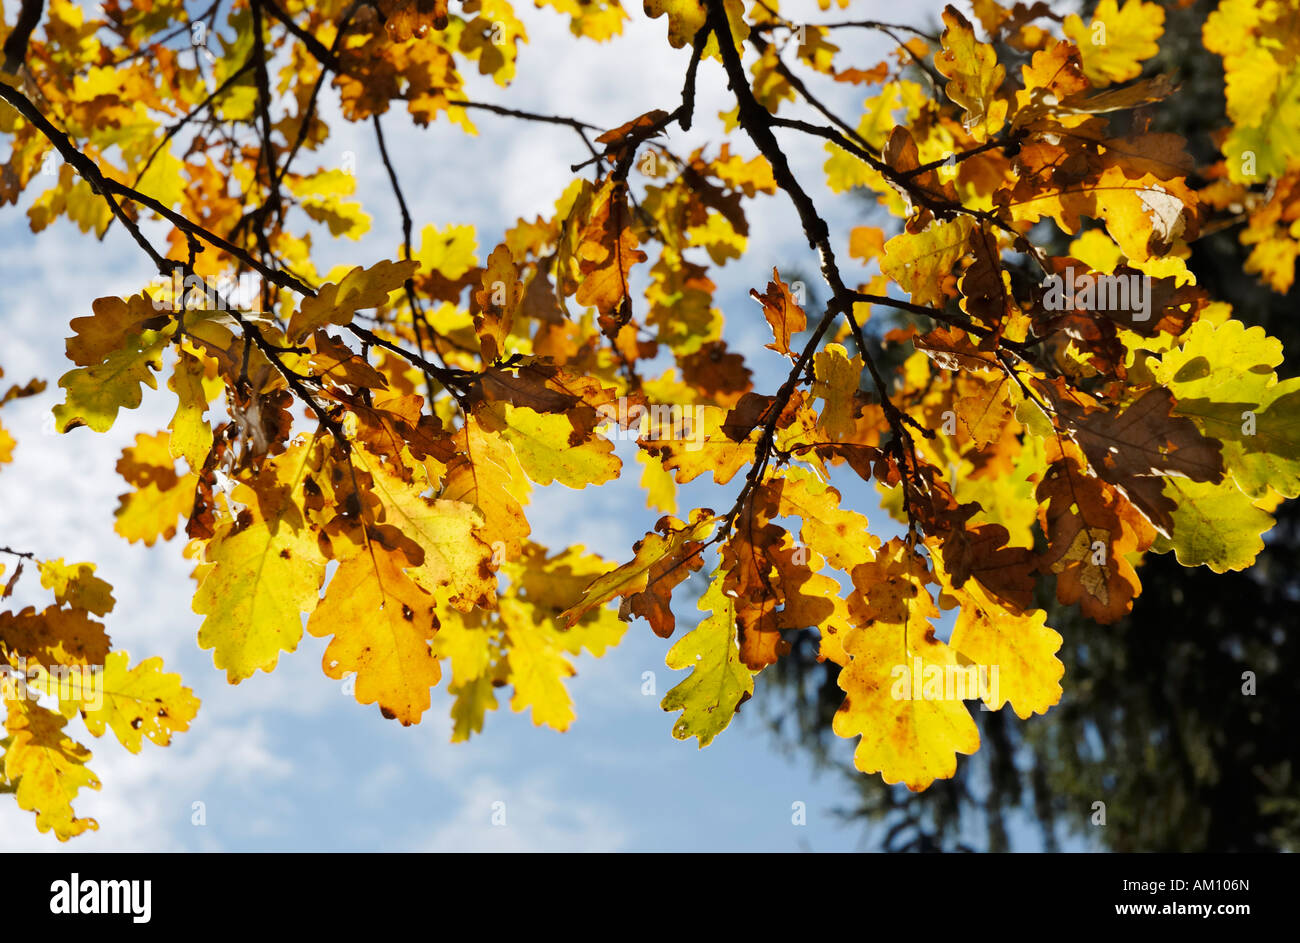 Colori autunnali di foglie di quercia, Quercus robur fagaceae Foto Stock